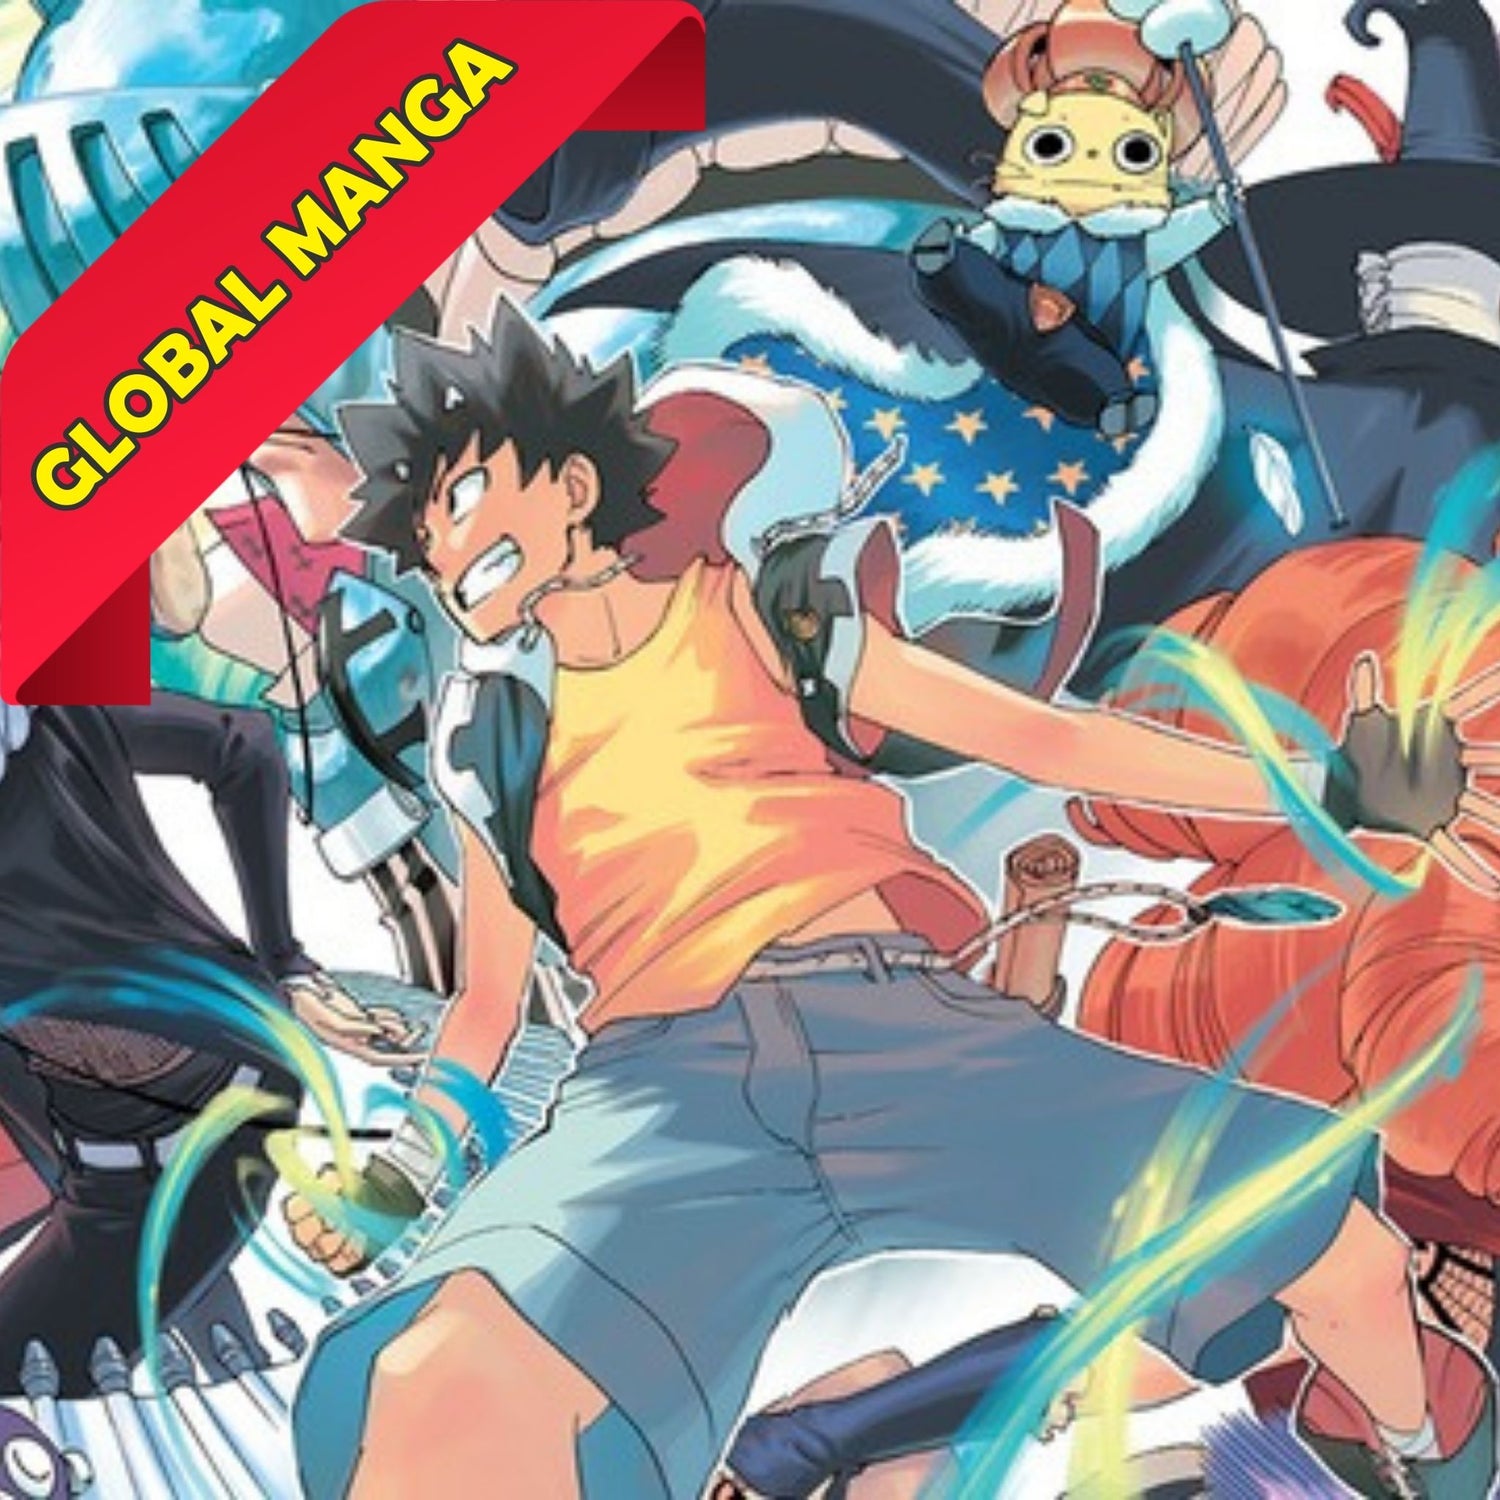 Manga Cash propose une grande variété de Globam Manga d'occasion de qualité à prix abordables